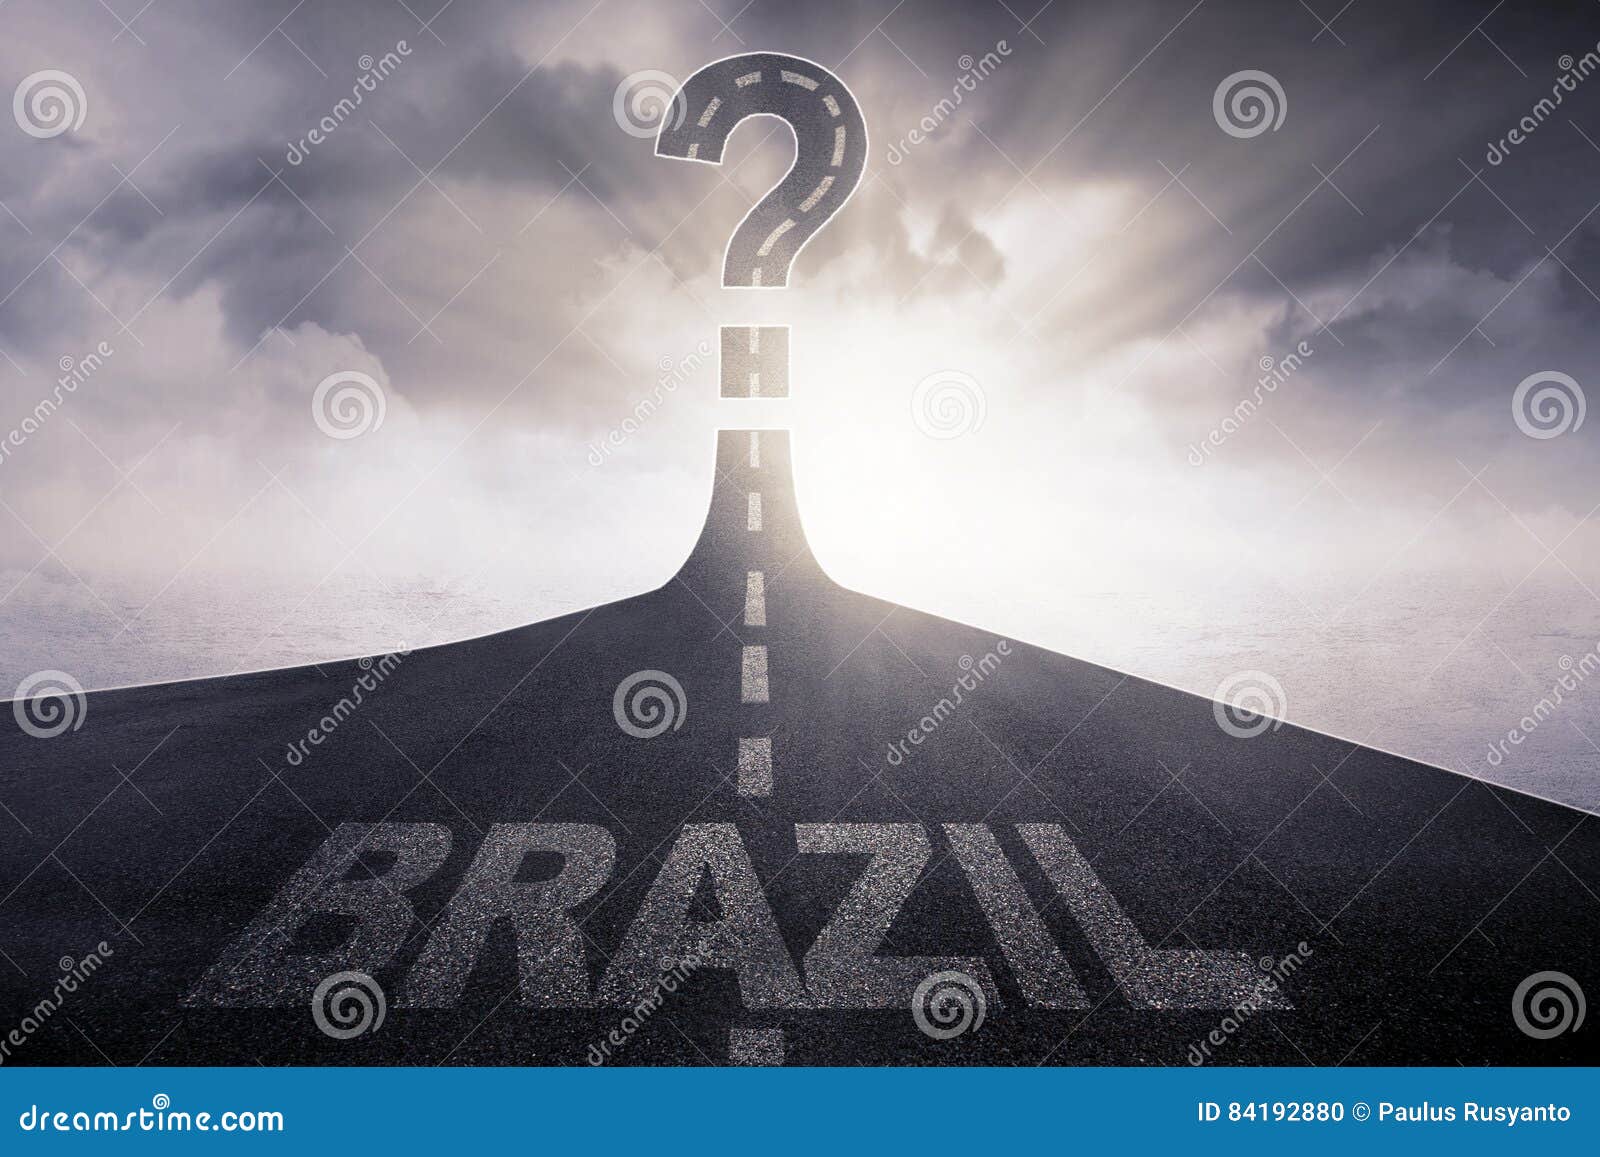 Brasil Escrito Na Estrada Com Um Ponto De Interrogação Foto de Stock - Imagem de idéia, asfalto: 84192880